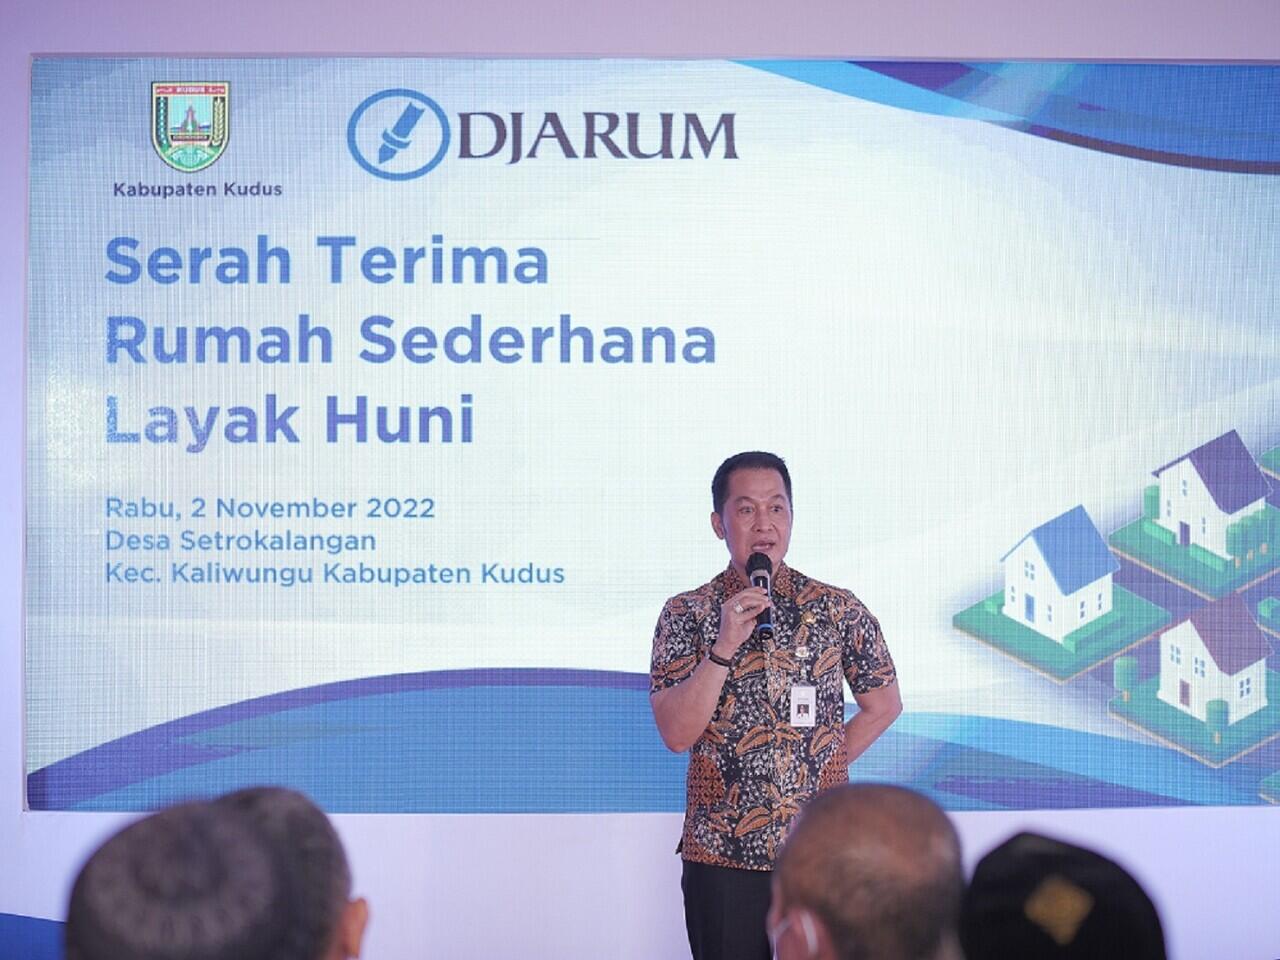 Kembali Jalankan Program RSLH, PT Djarum Bantu Renovasi 10 Rumah di Kabupaten Kudus